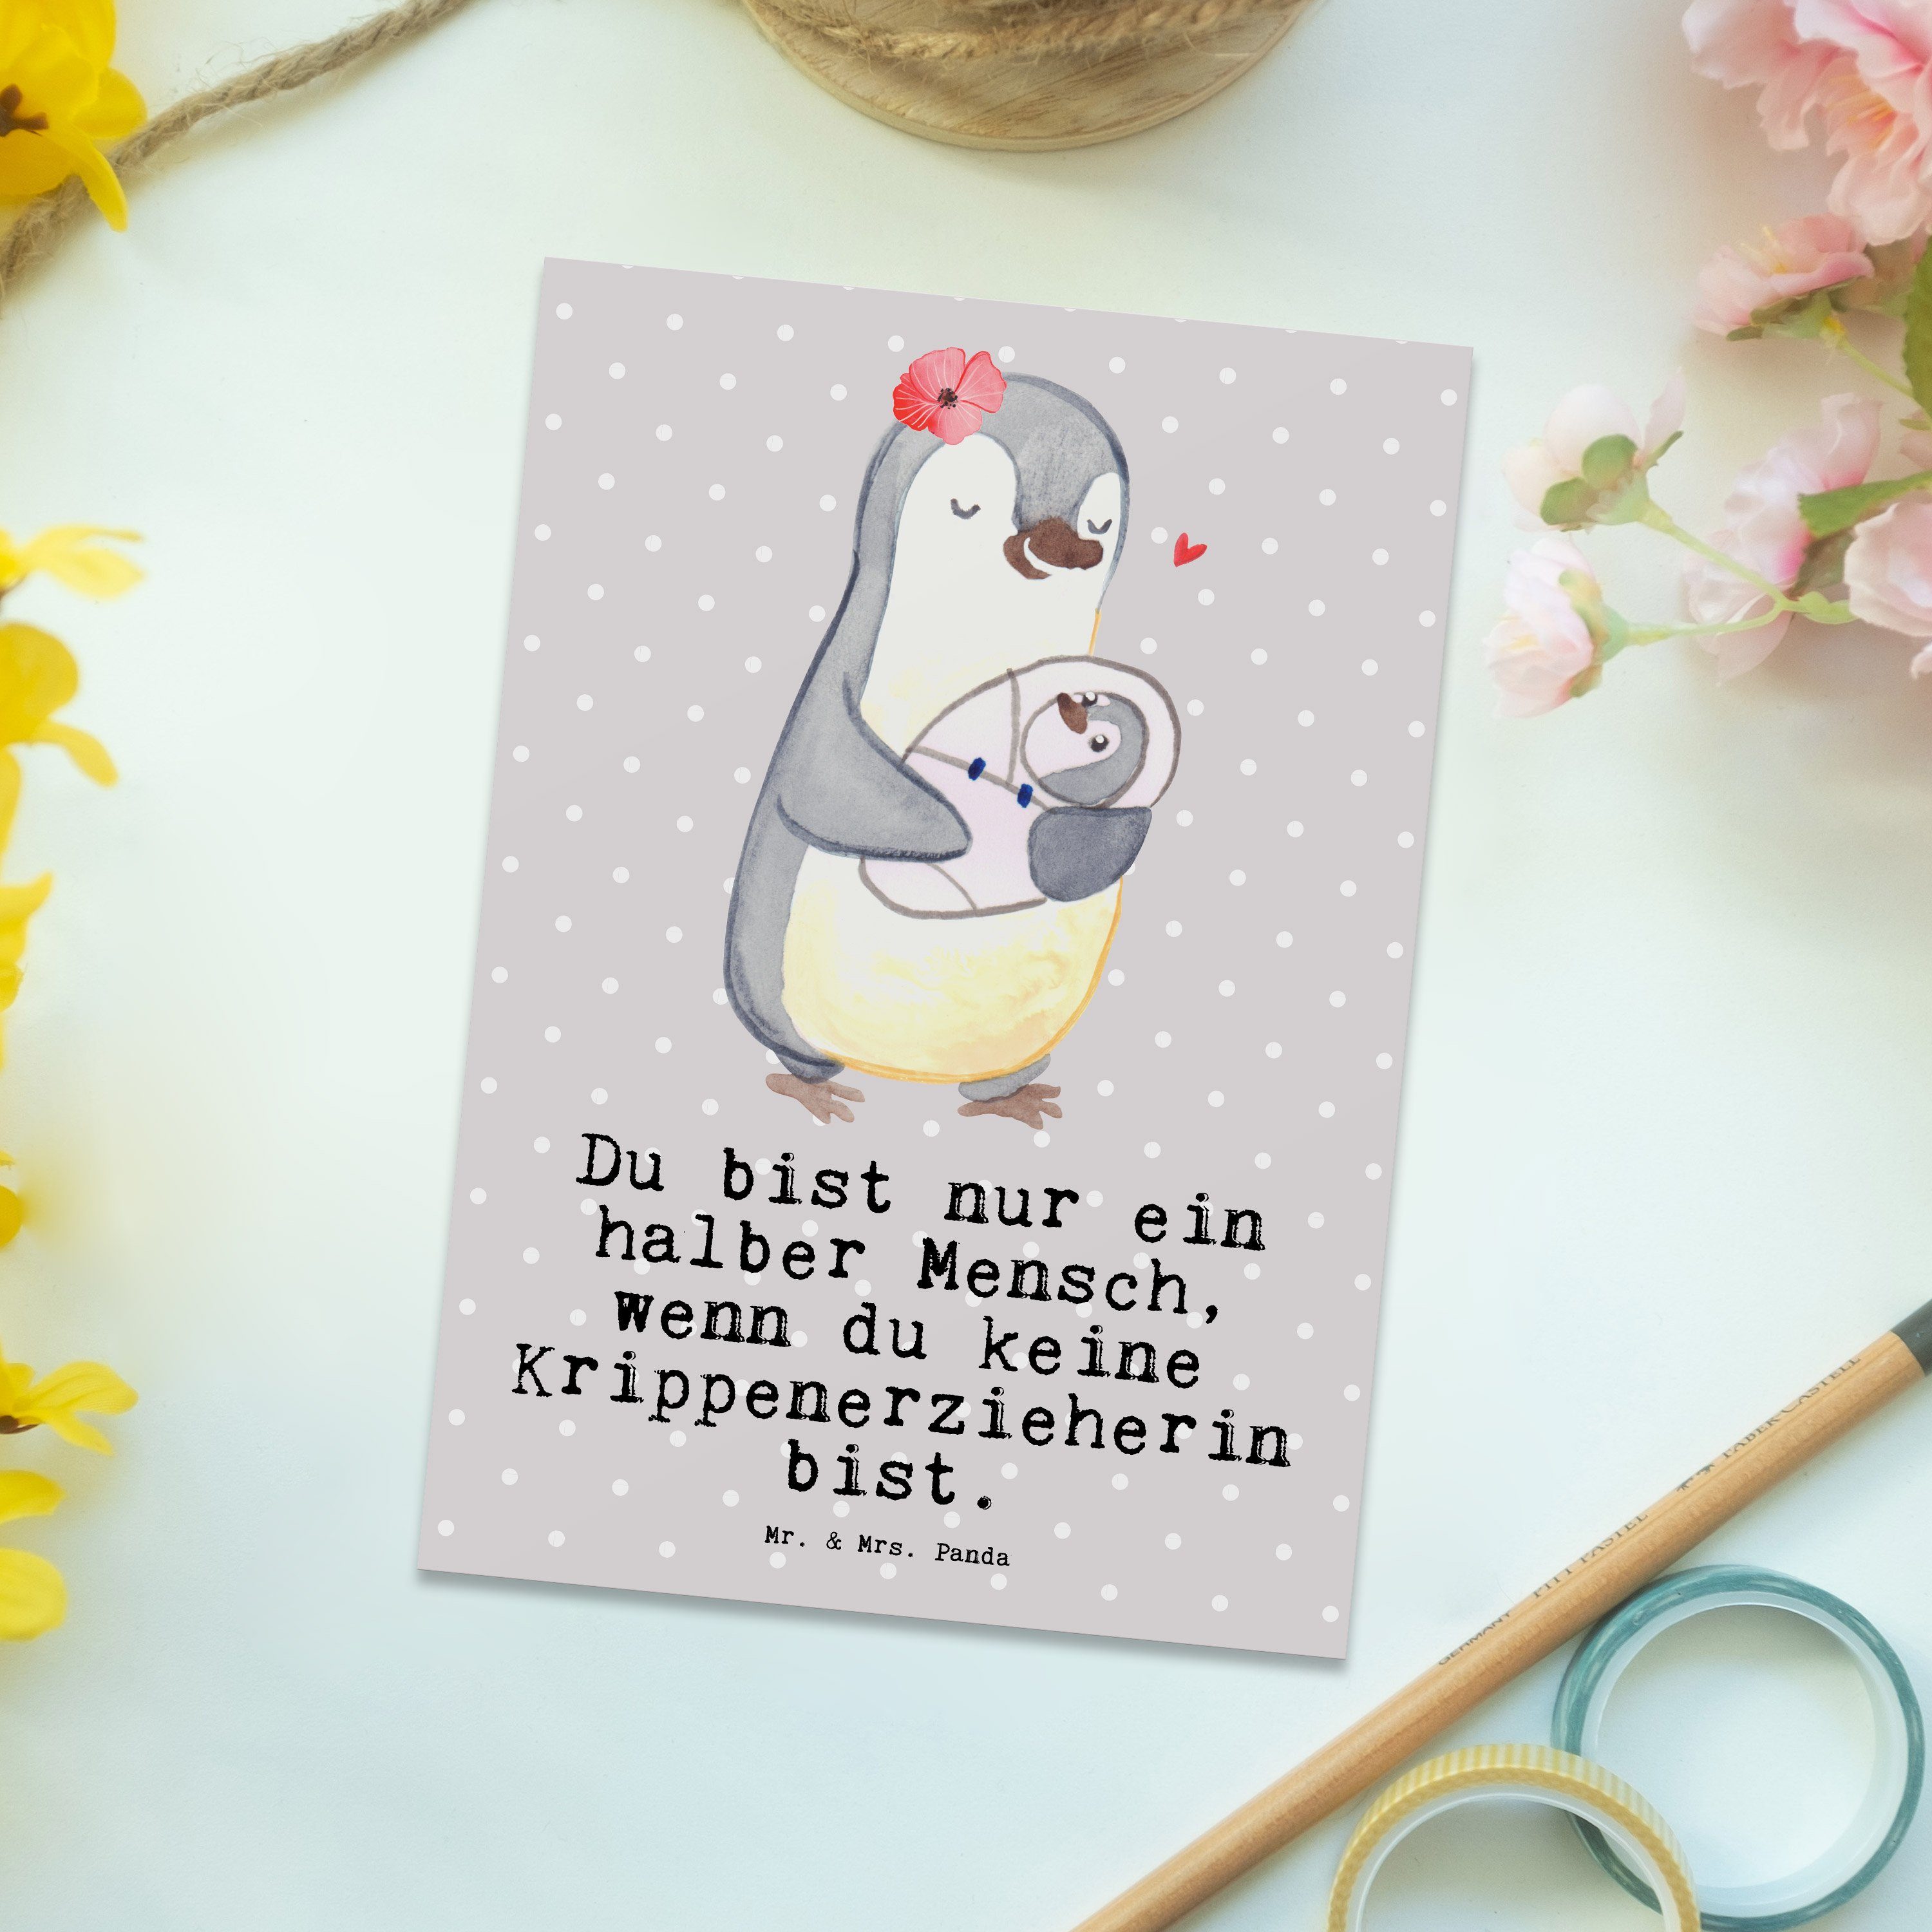 Mr. & Mrs. Panda Postkarte Krippenerzieherin mit Herz - Grau Pastell - Geschenk, Pädagogin, Einl